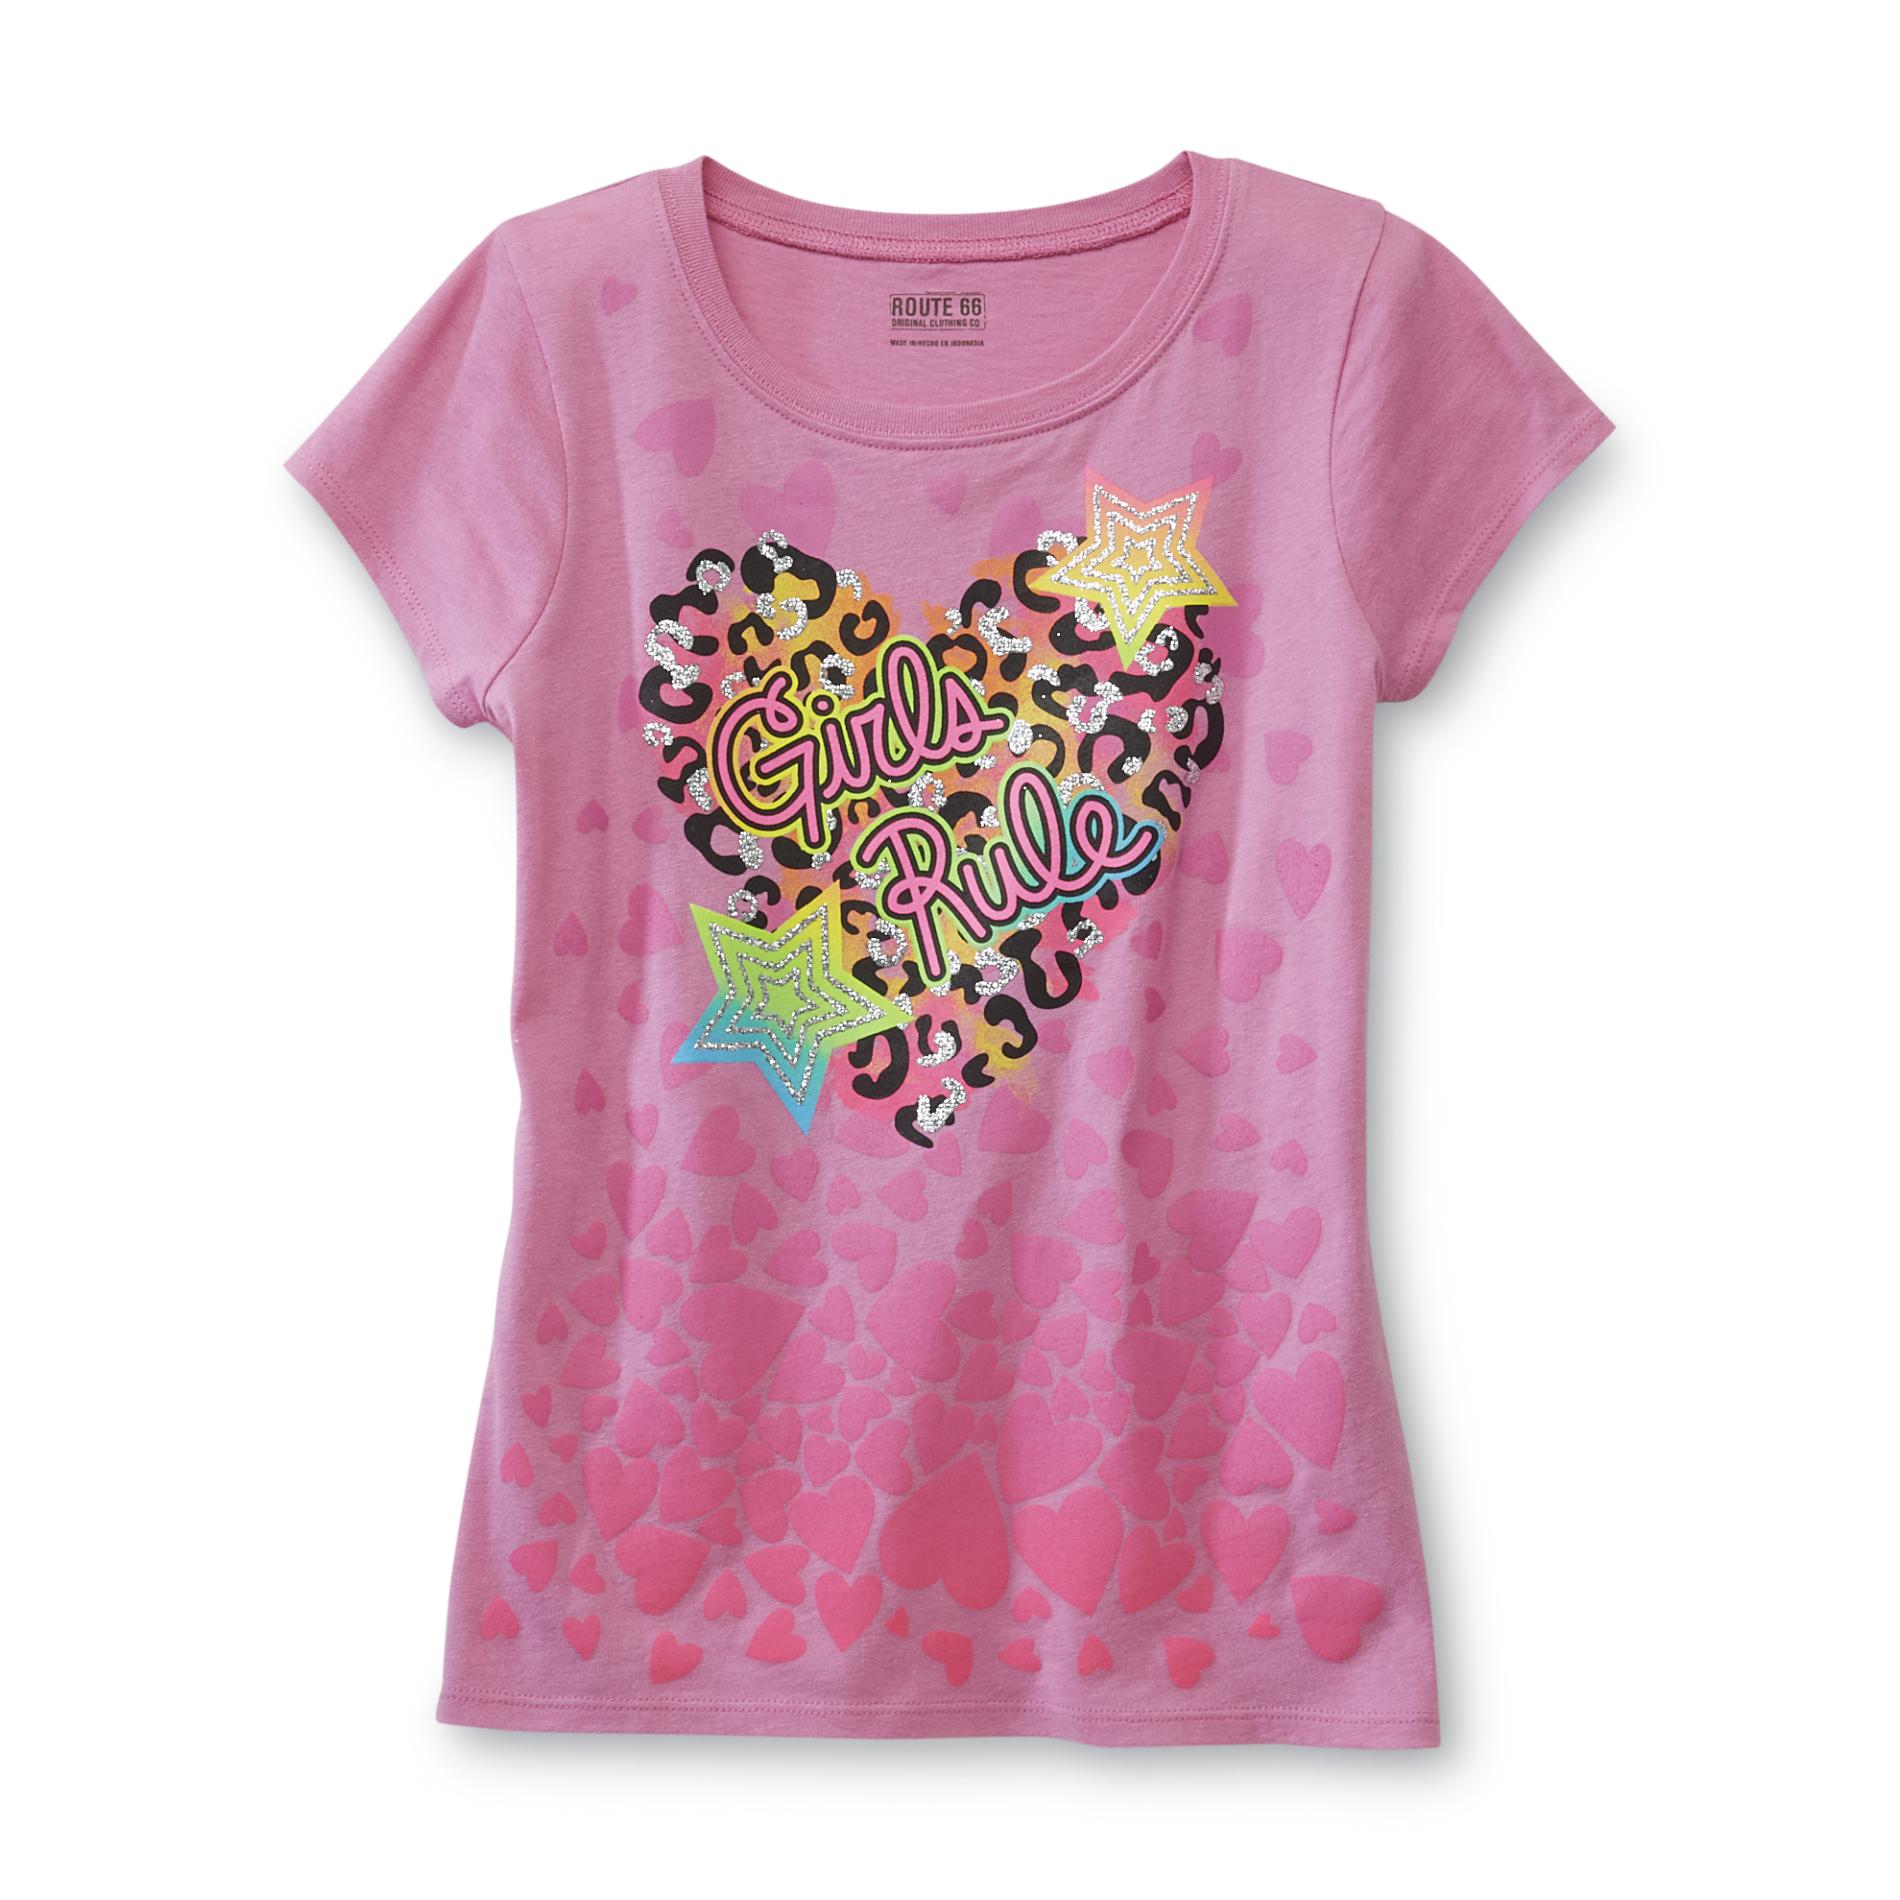 Route 66 Girl's Glitter Heart T-Shirt - Girls Rule